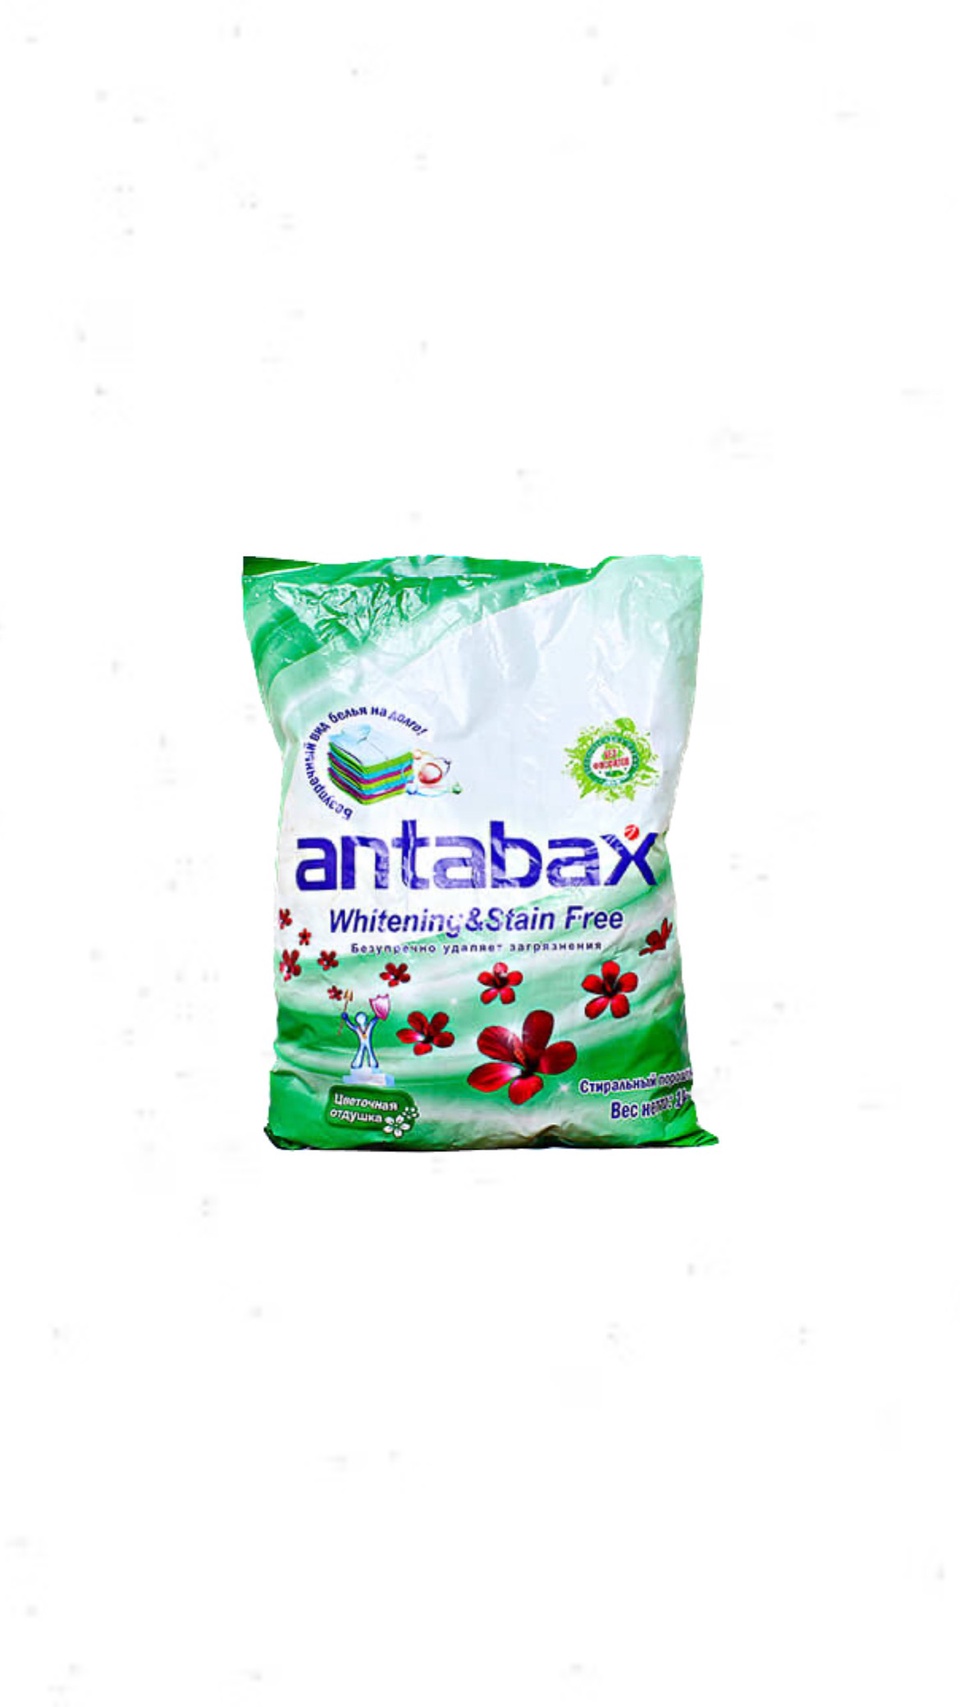 Стиральный порошок Antabax 1кг - 350 ₽, заказать онлайн.